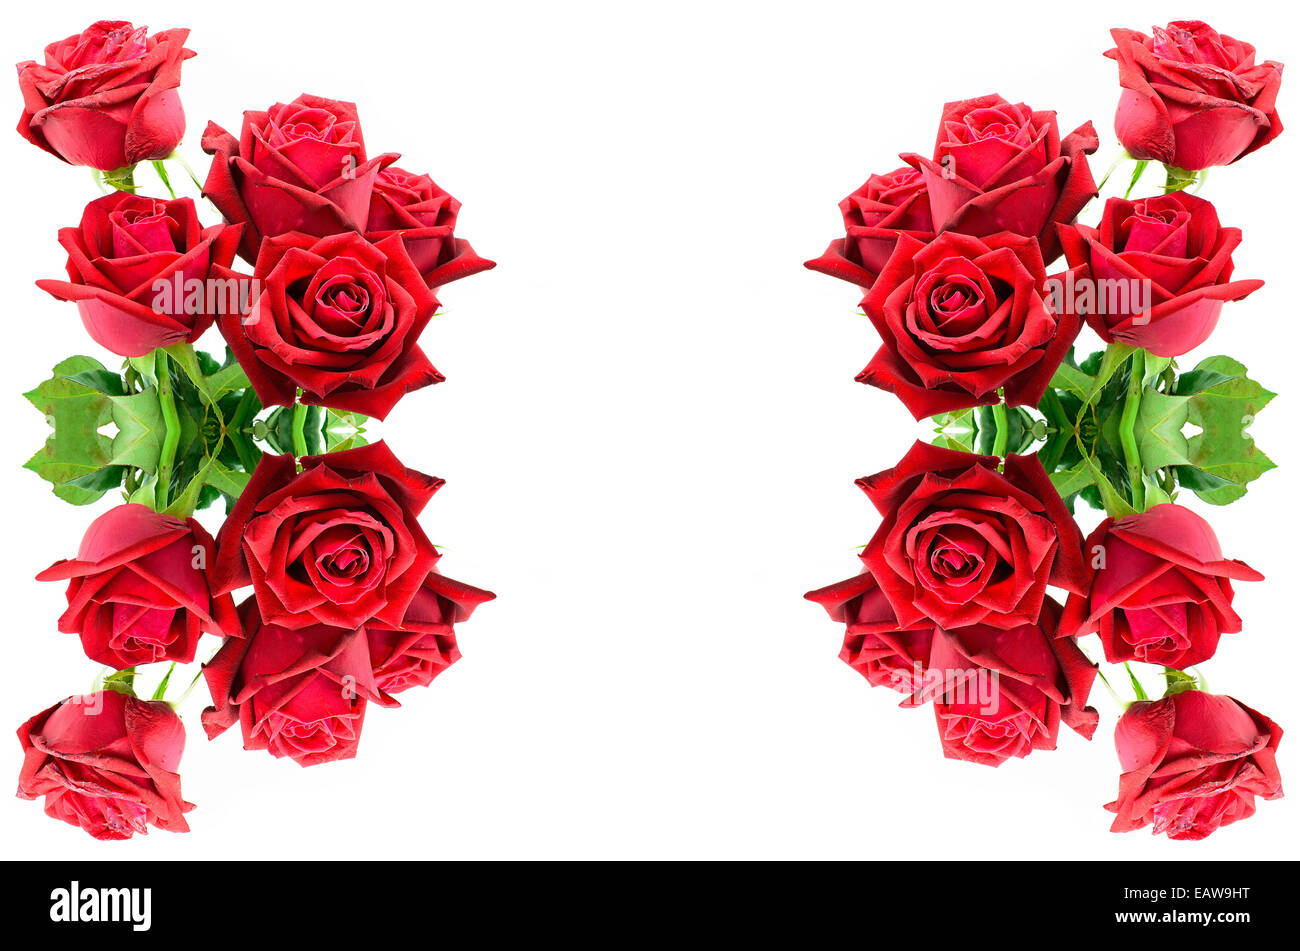 Bella rosa rossa, isolato su sfondo bianco Foto Stock